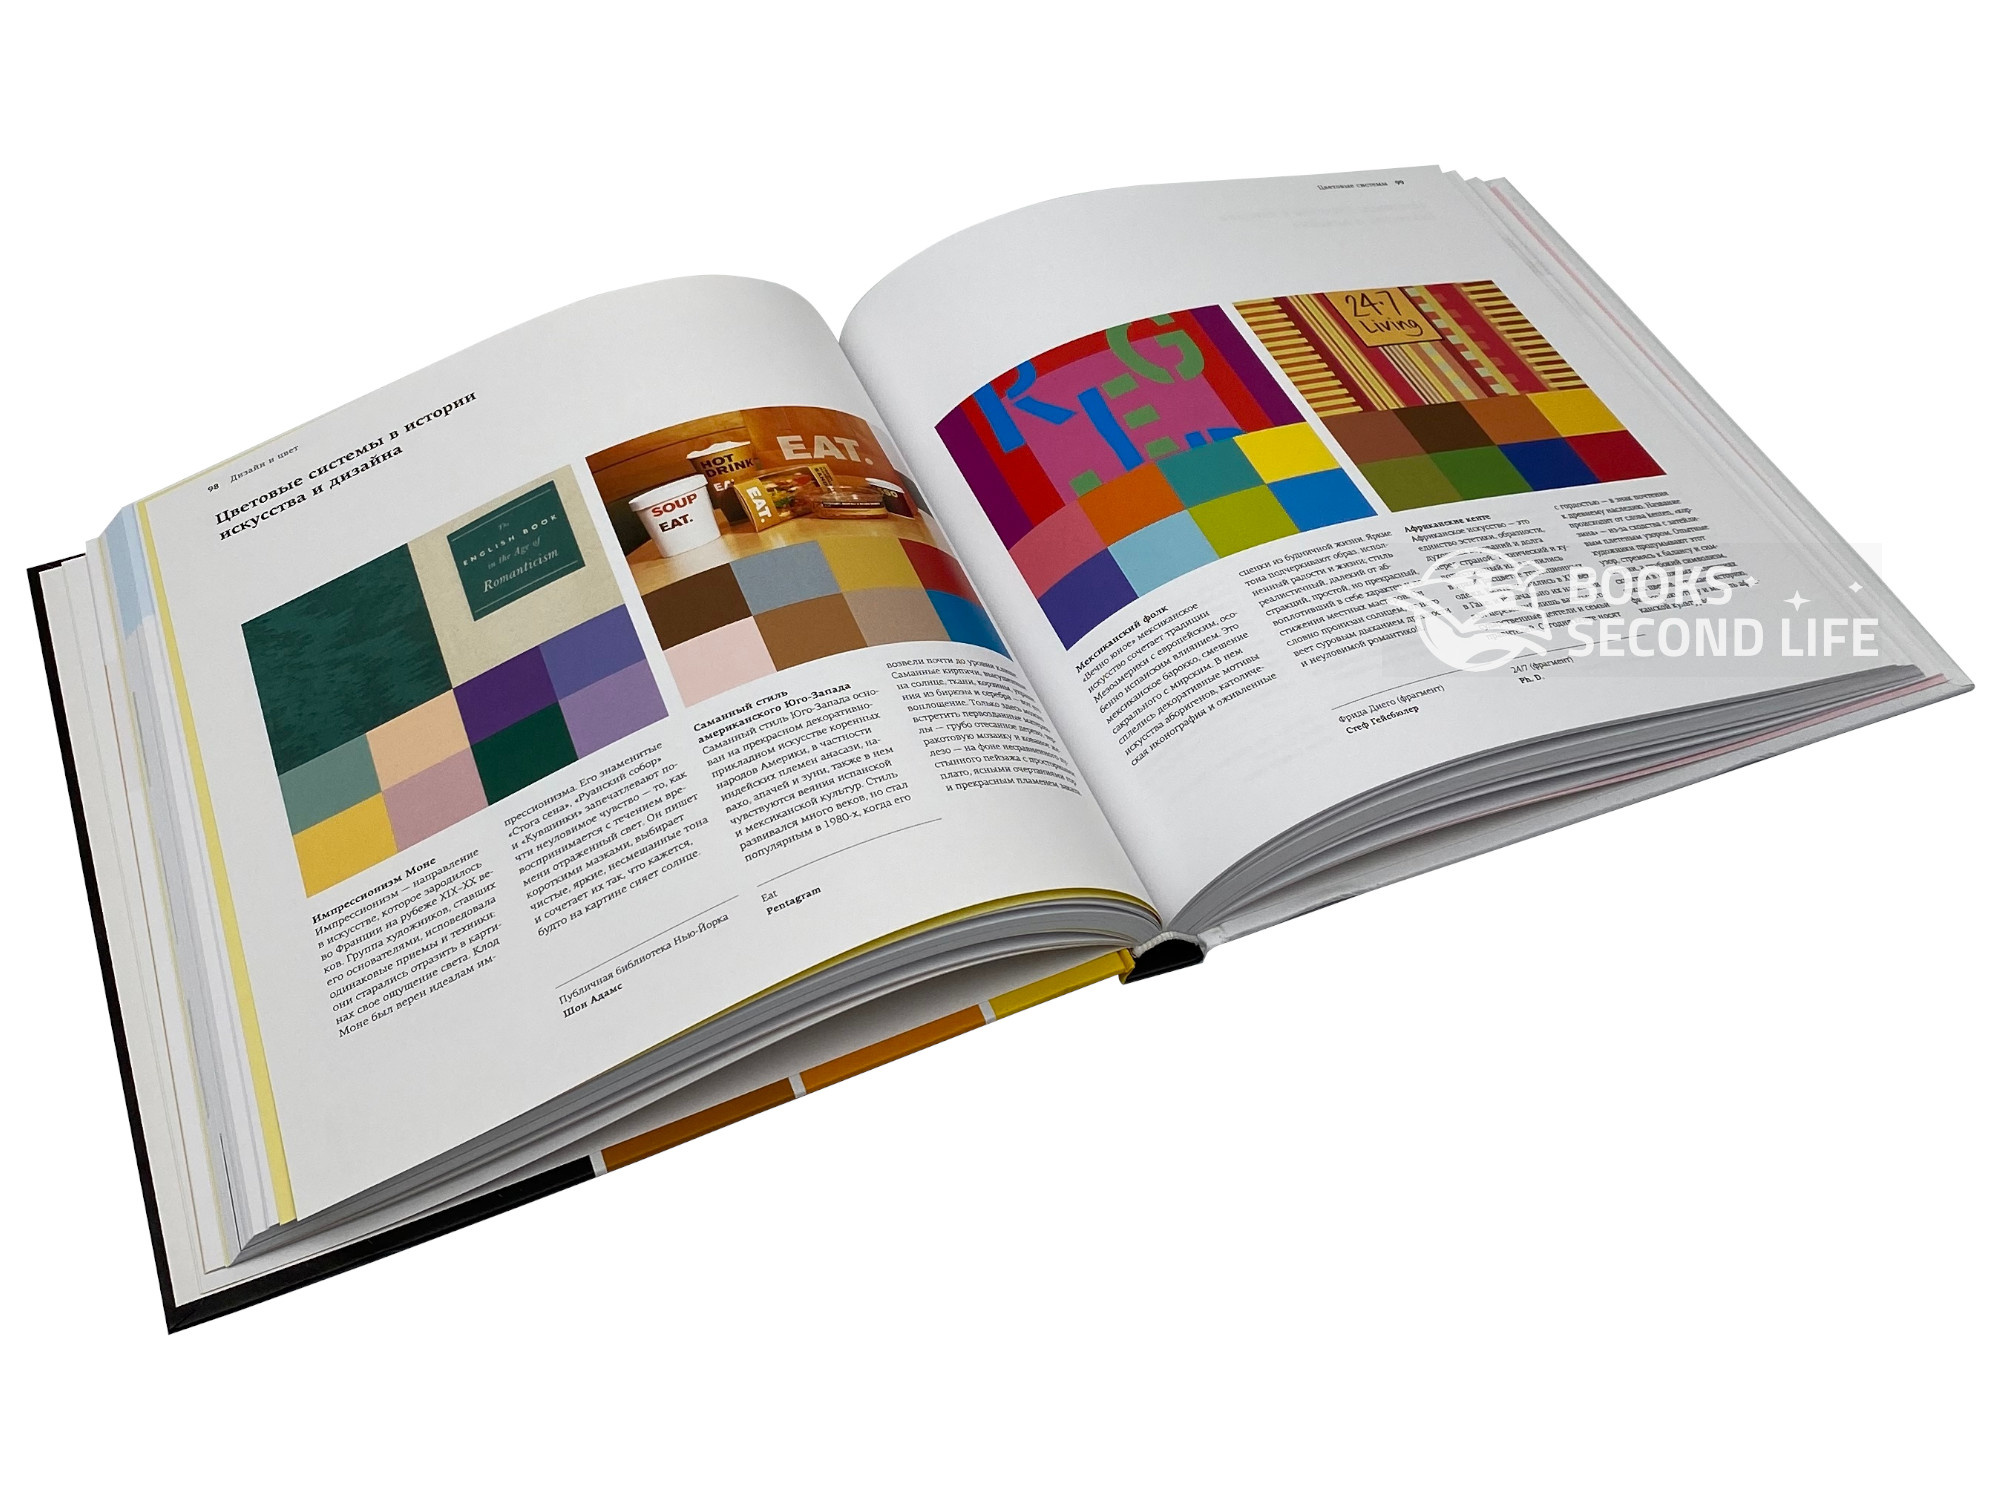 Дизайн и цвет. Практикум. Реальное руководство по использованию цвета в графическом дизайне. Автор — Шон Адамс, Терри Ли Стоун. 